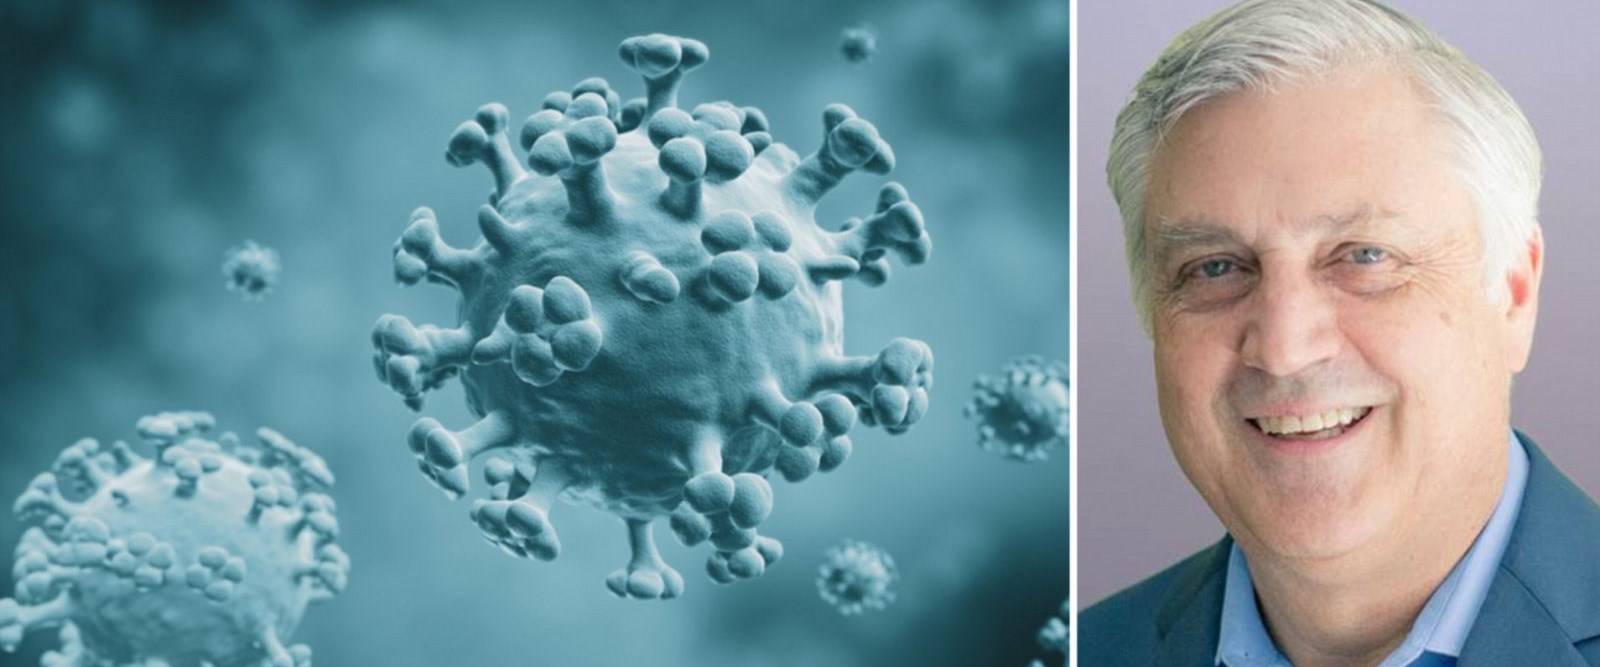 300 milyon kişiyi tehdit eden grip salgını uyarısı